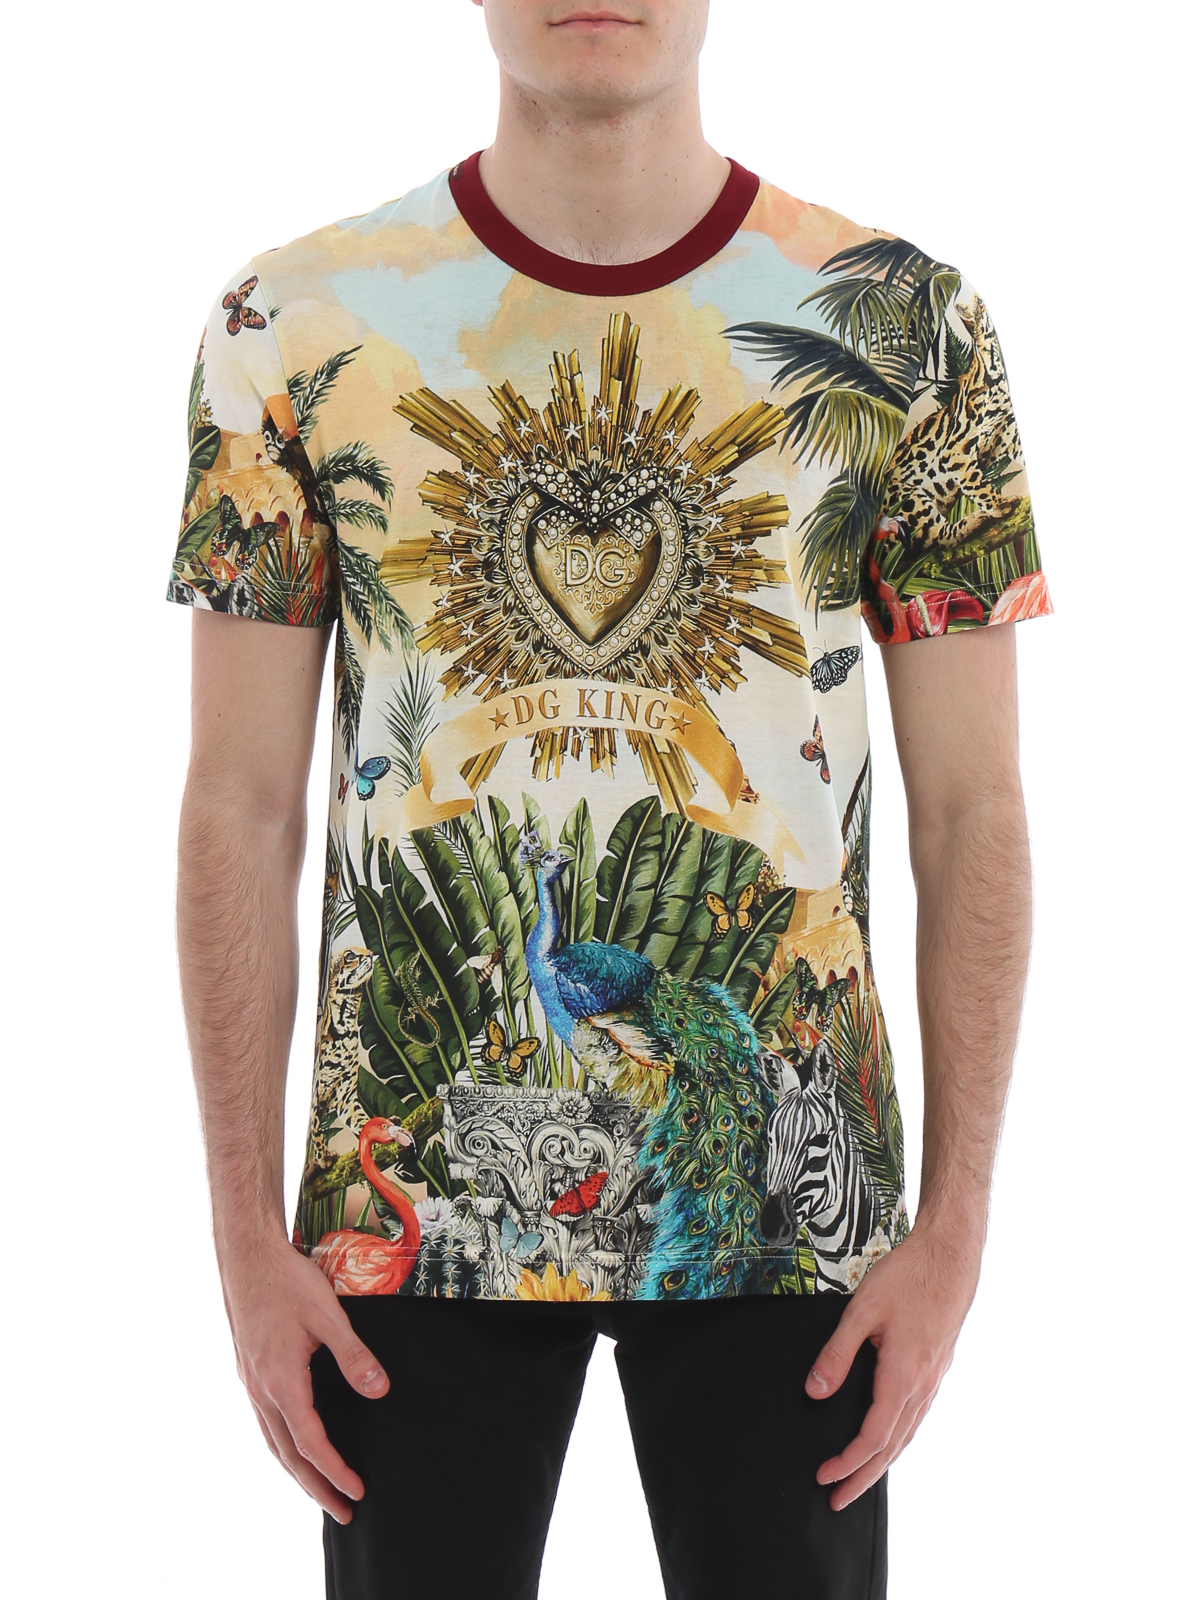 buy Airfield Break apart T-shirts Dolce & Gabbana - Tropico DG King print T-shirt - G8KBATHH7YPHHIH3